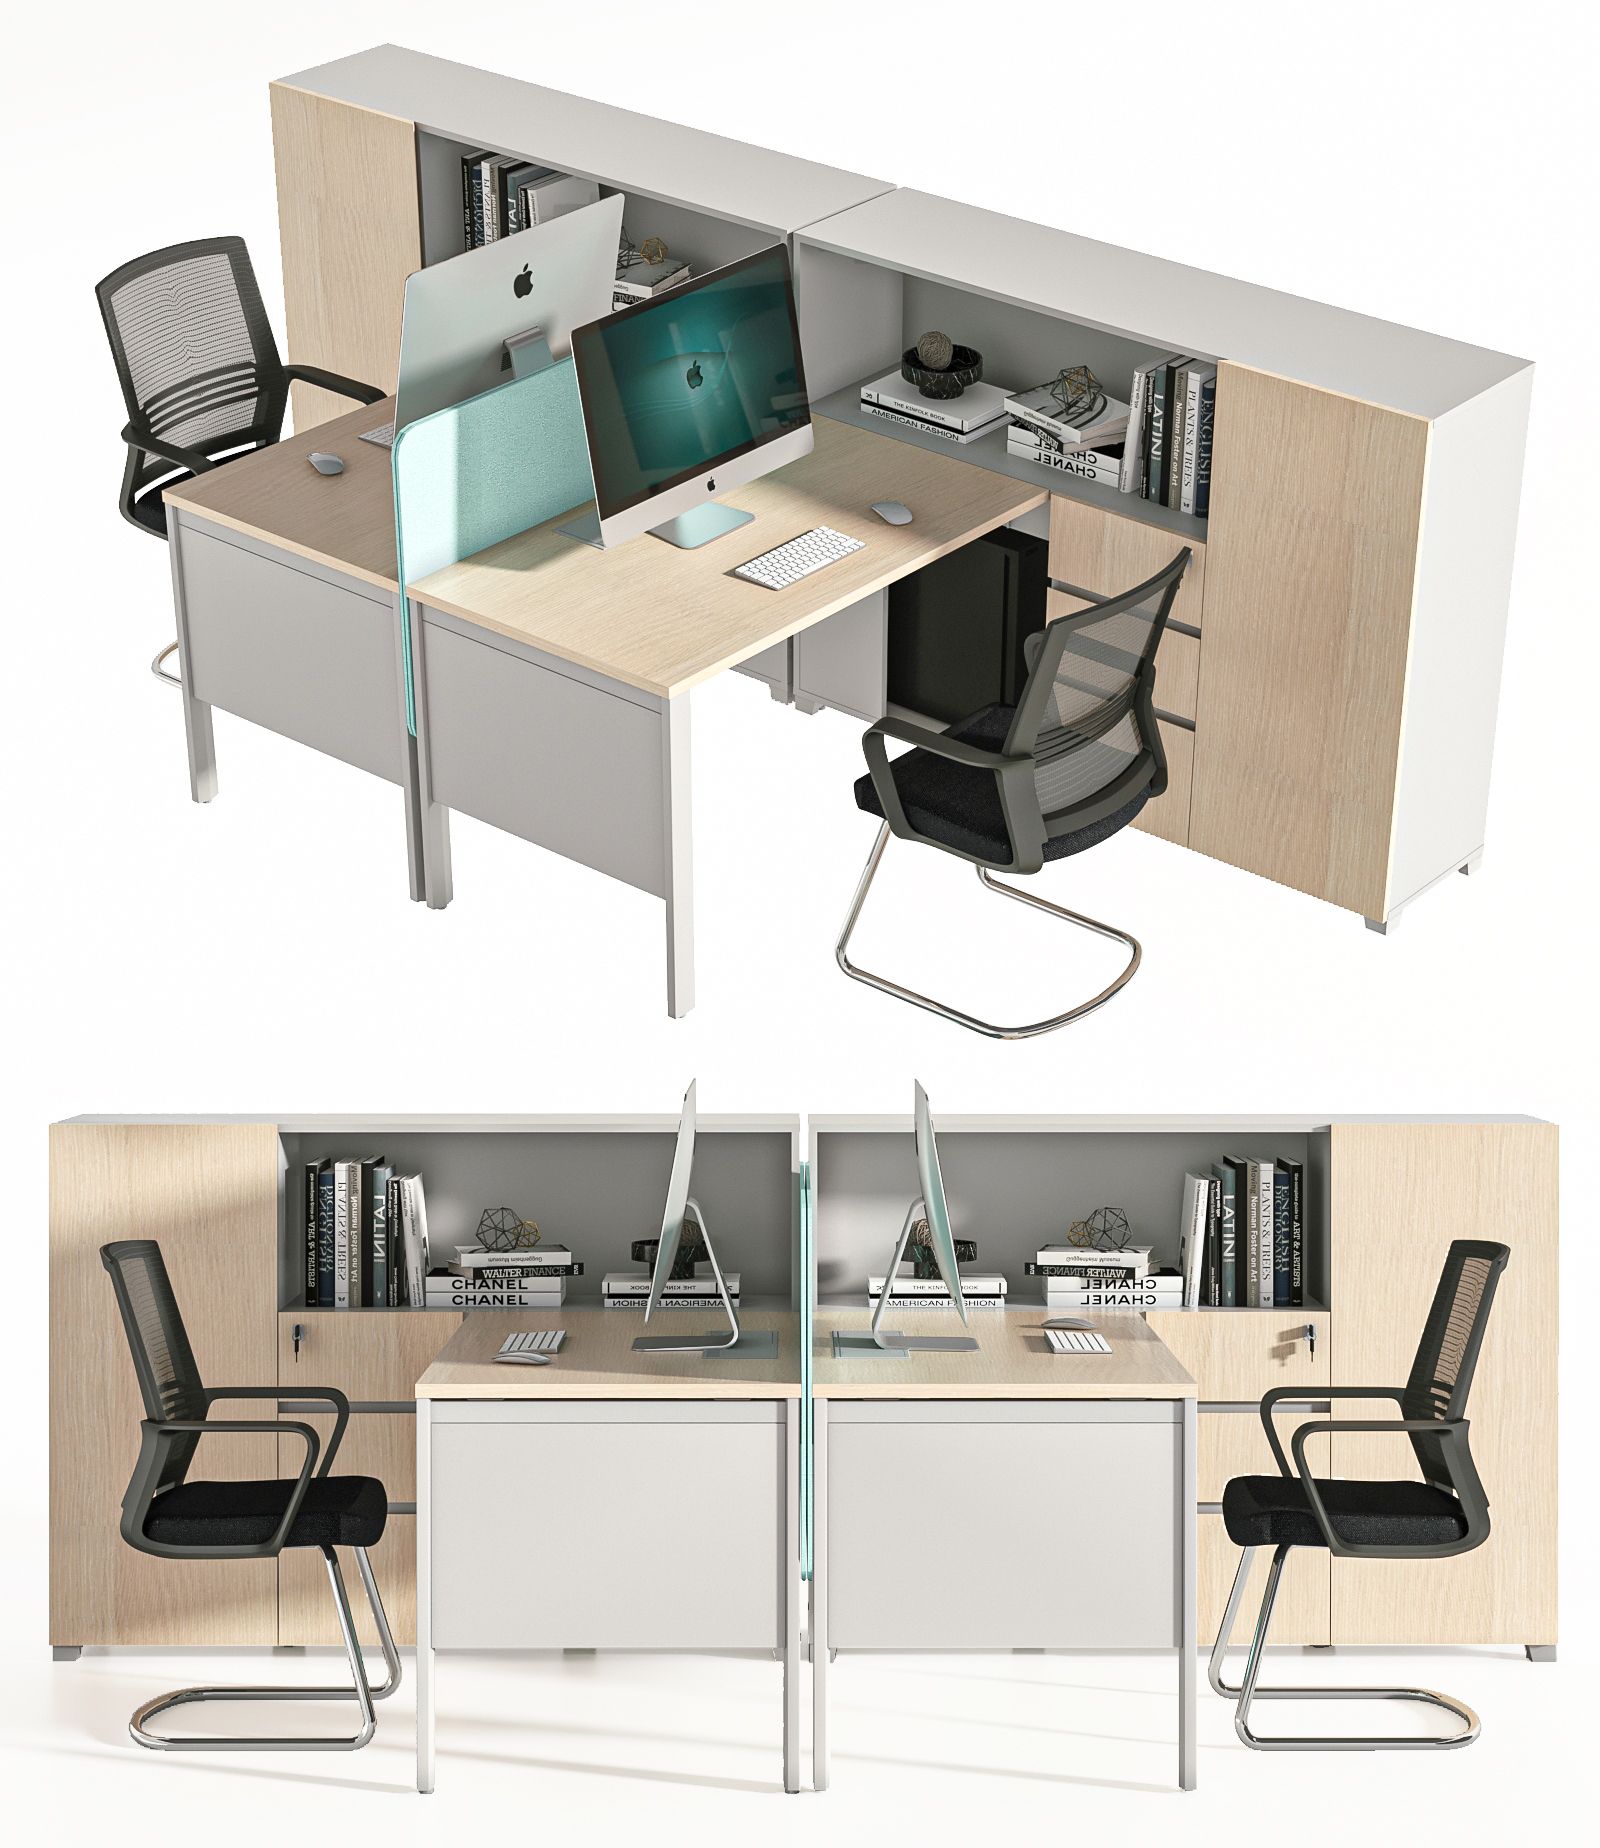 现代办公桌 员工位 职员桌 工位 桌上屏 桌屏 屏风 条桌 隔断 办公椅 弓形椅 弓架椅